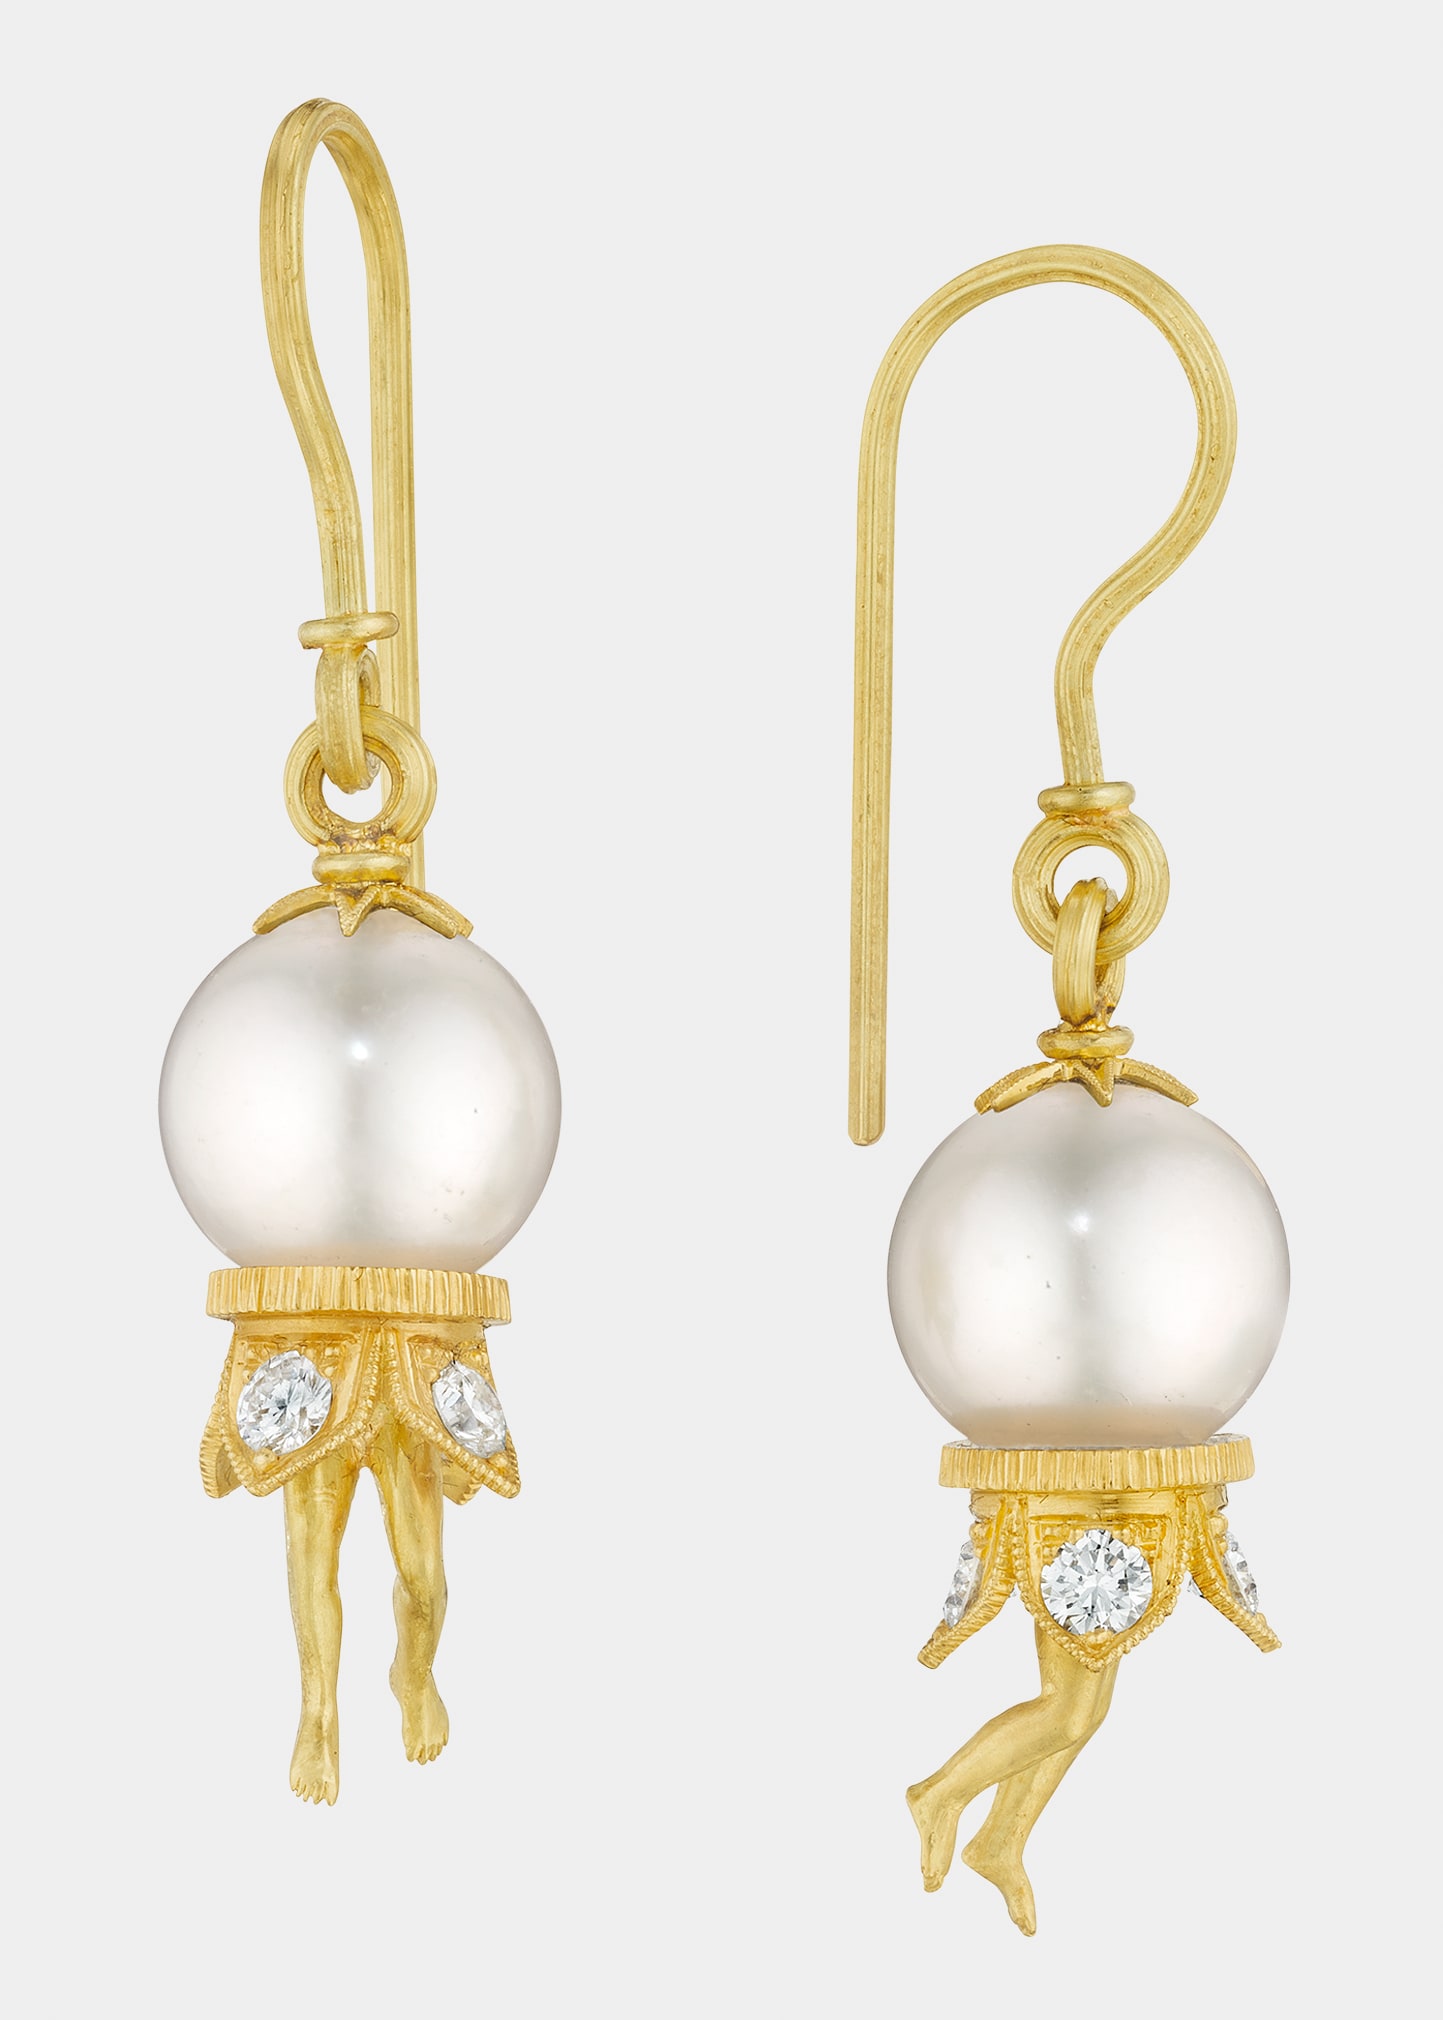 Bosch Pearl Earrings in 18K Gold with Diamonds